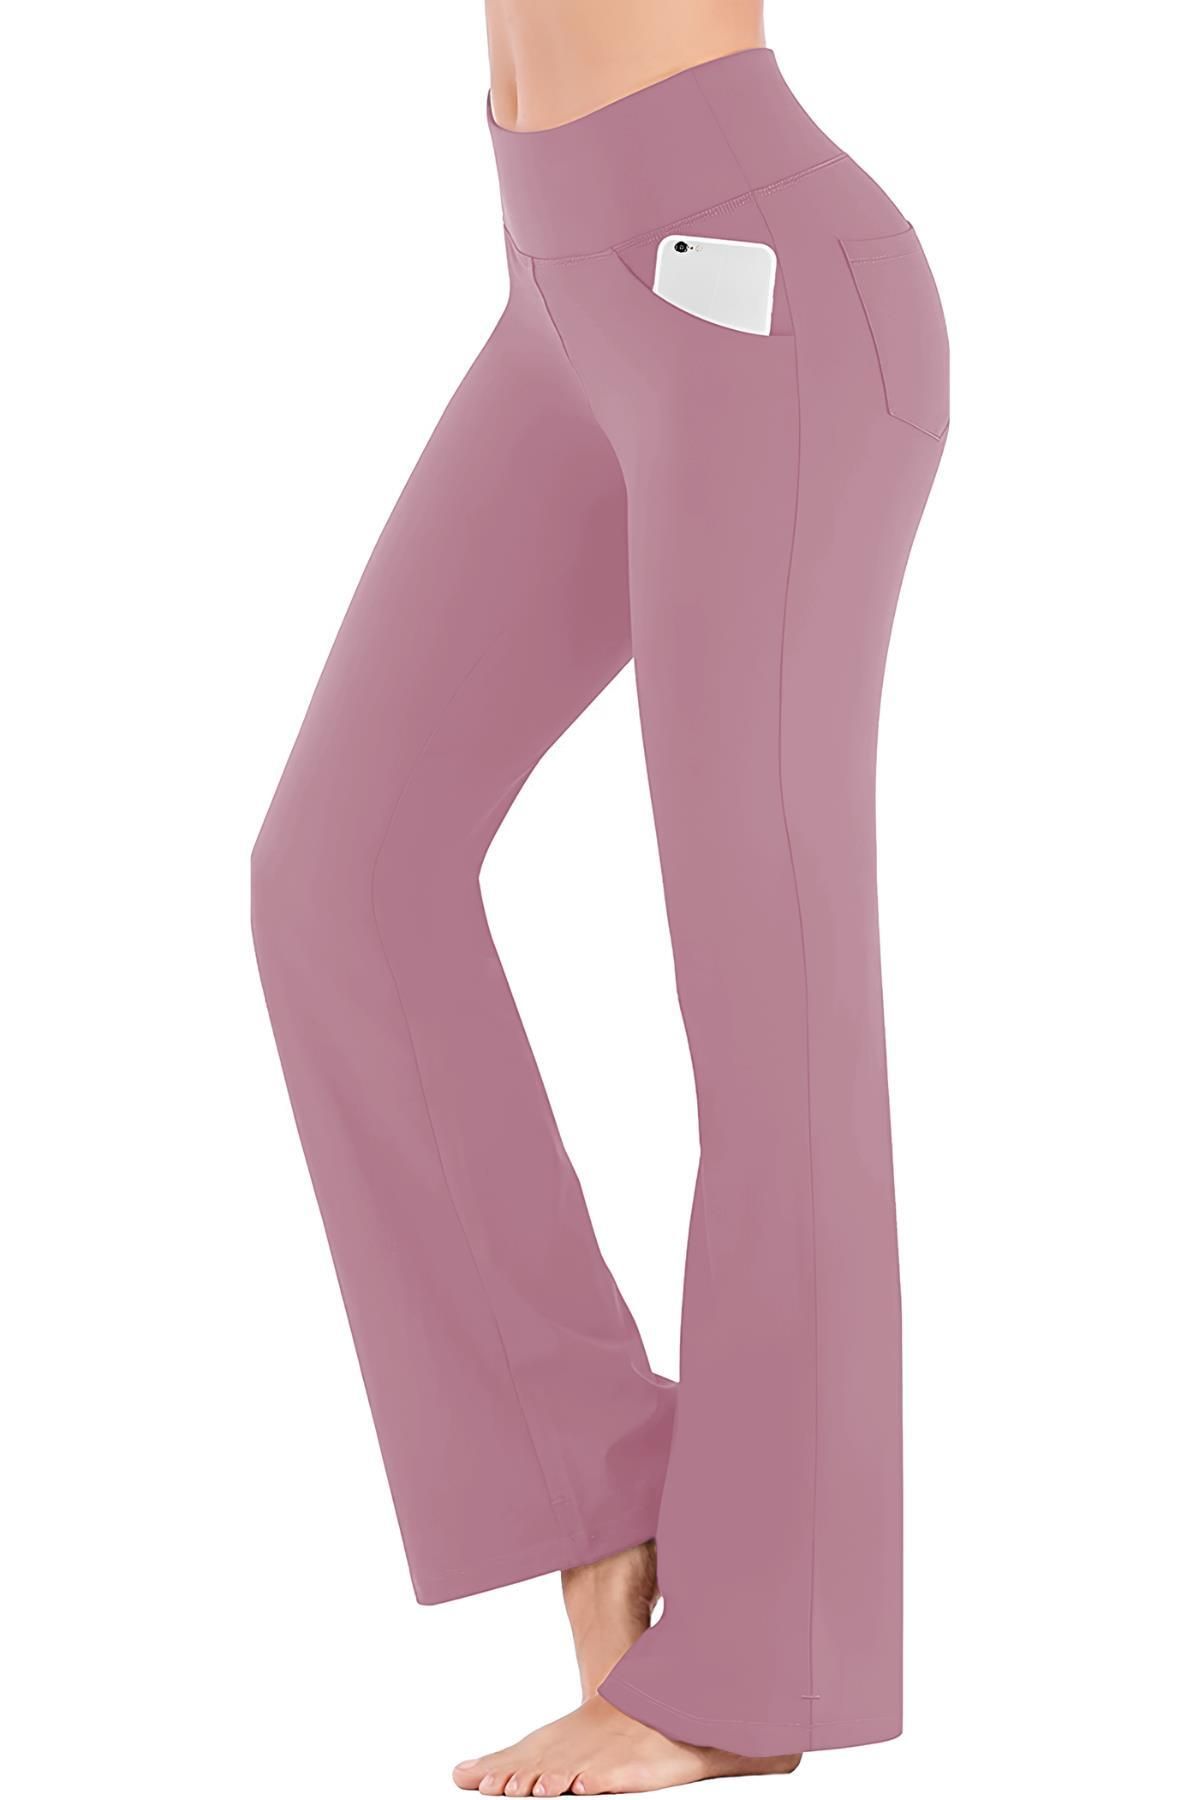 Ghassy Co Kadın Bootcut Yüksek Bel Yoga Egzersiz 4 Cepli Toparlayıcı Ispanyol Paça Tayt Pantolon